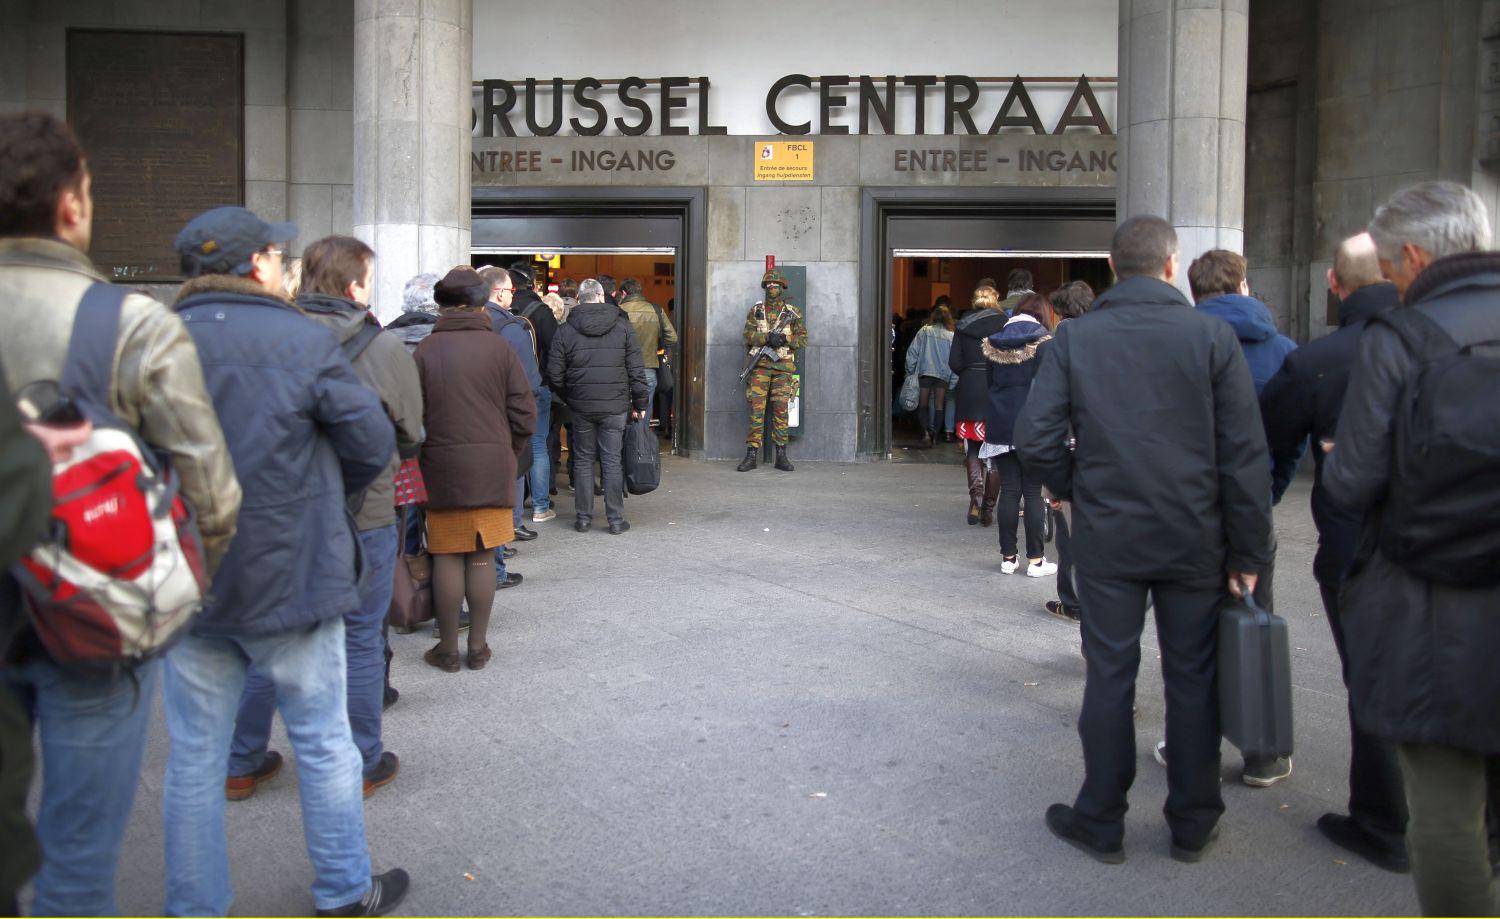 Alapos biztonsági ellenőrzésen kell átesniük a brüsszeli központi vasútállomásra érkezőknek